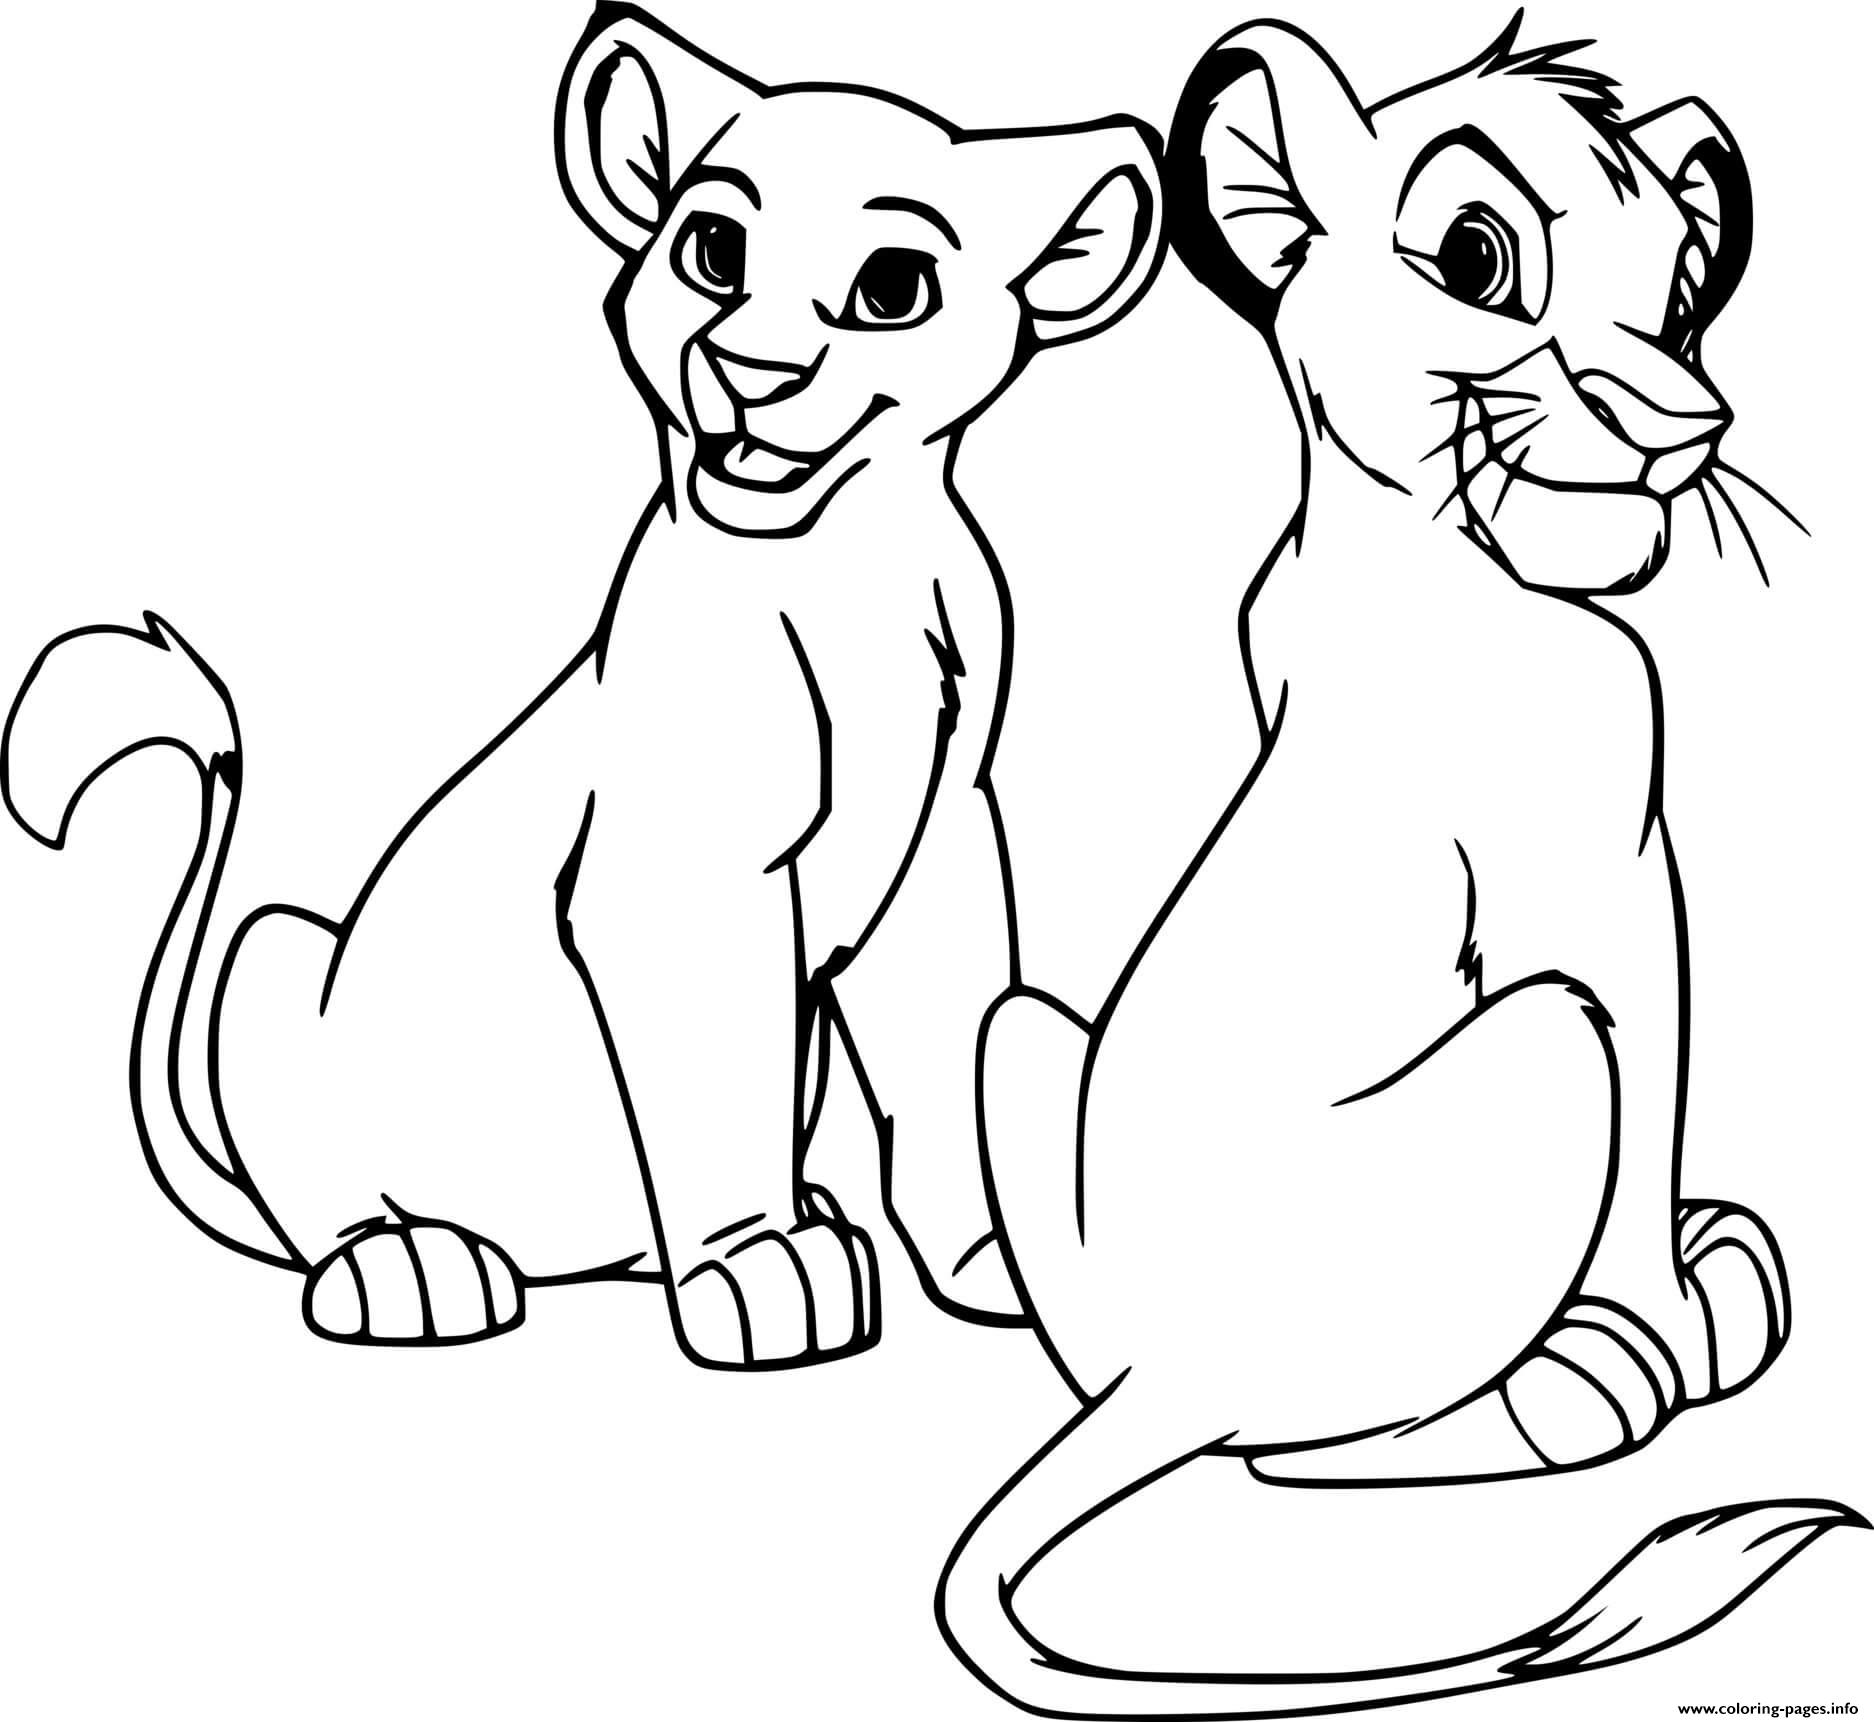 Young Nala And Simba coloring